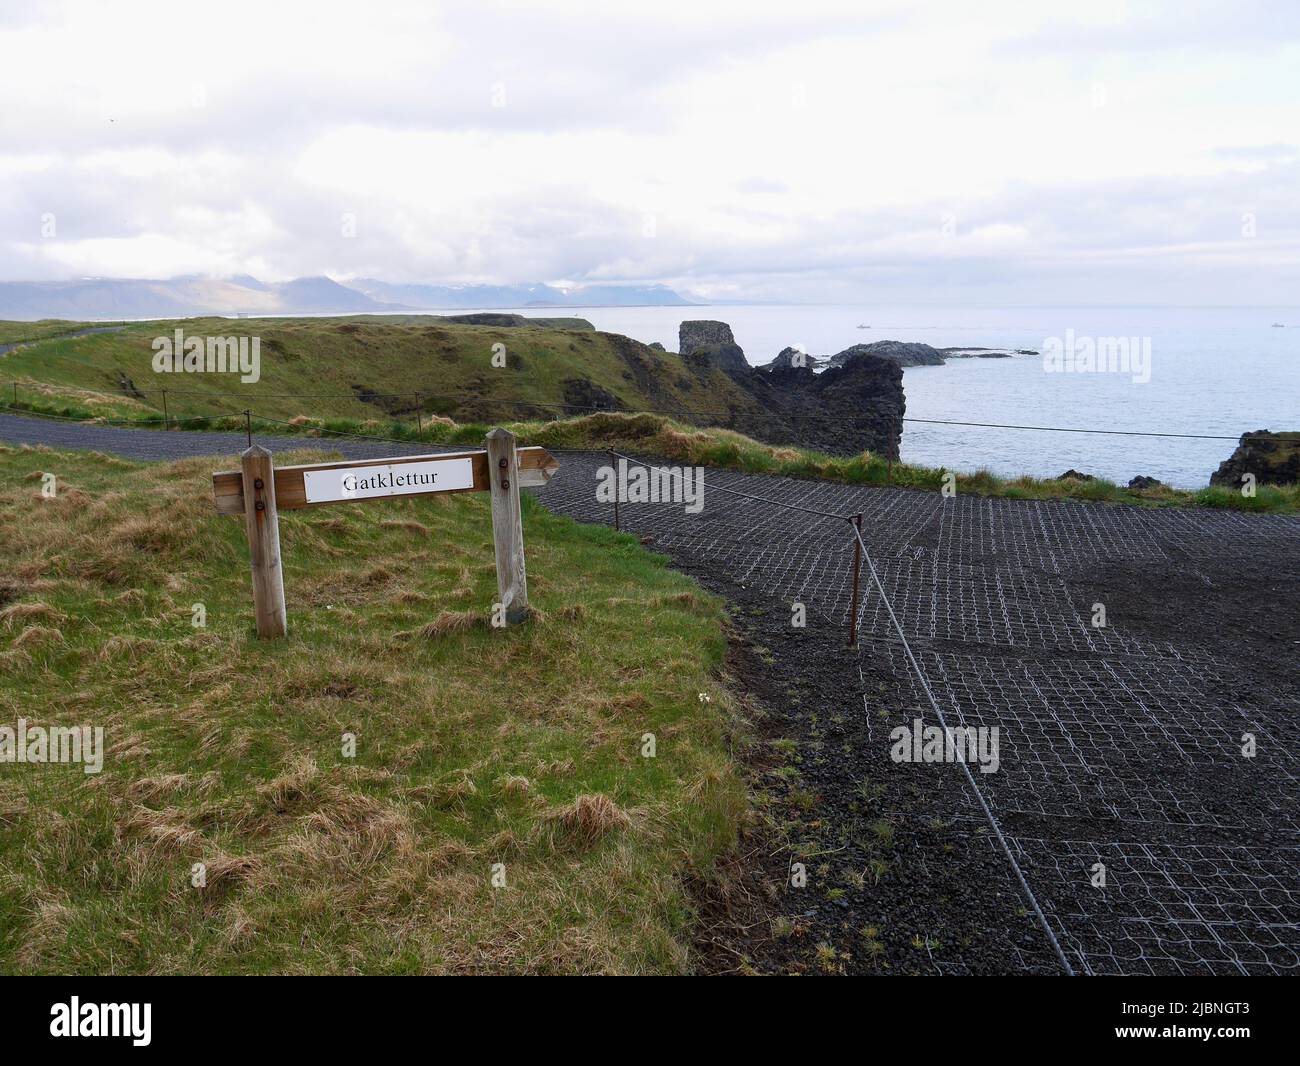 Cartello che indica la strada per il famoso arco di roccia basaltica Gatklettur nel Parco Nazionale della Penisola di Snaefelsnes. Arnarstapi, Islanda. Foto di alta qualità Foto Stock